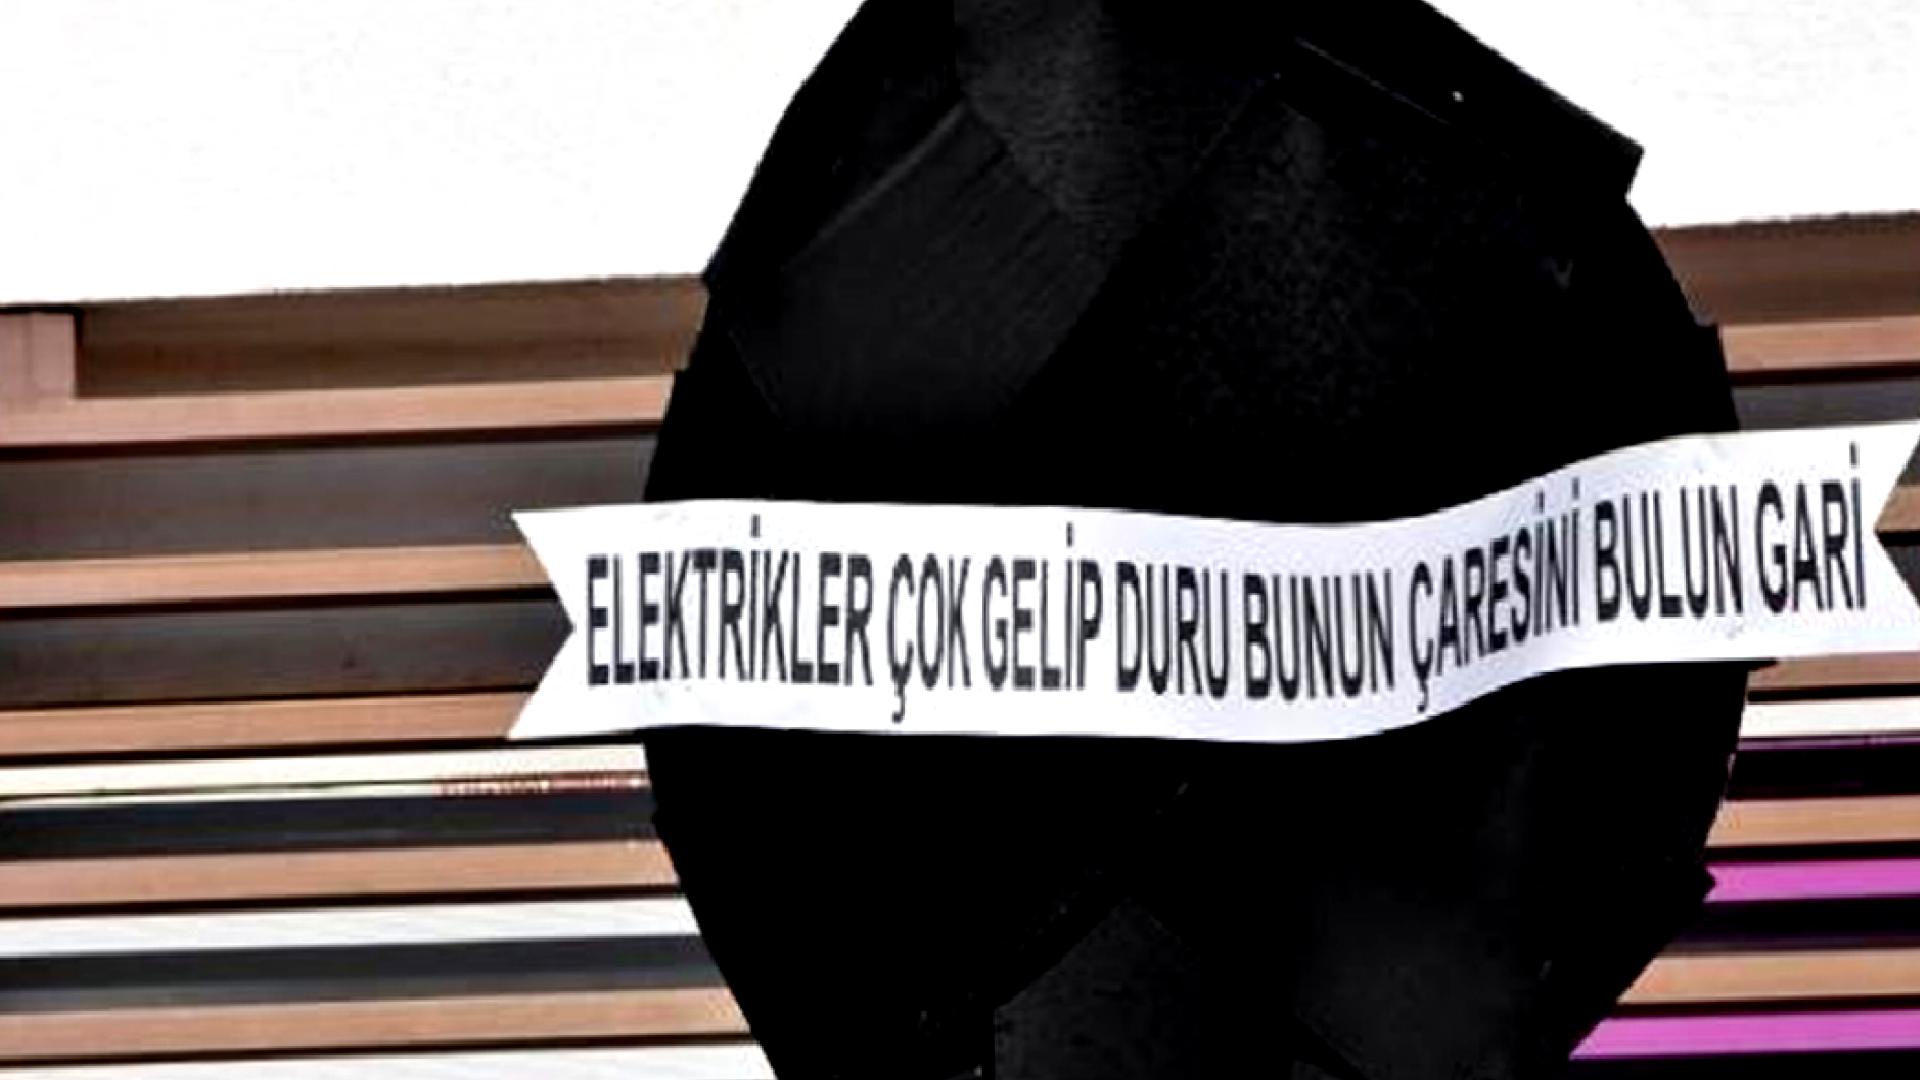 Bodrum’da İlginç Eylem: “Elektrikler çok gelip duru”